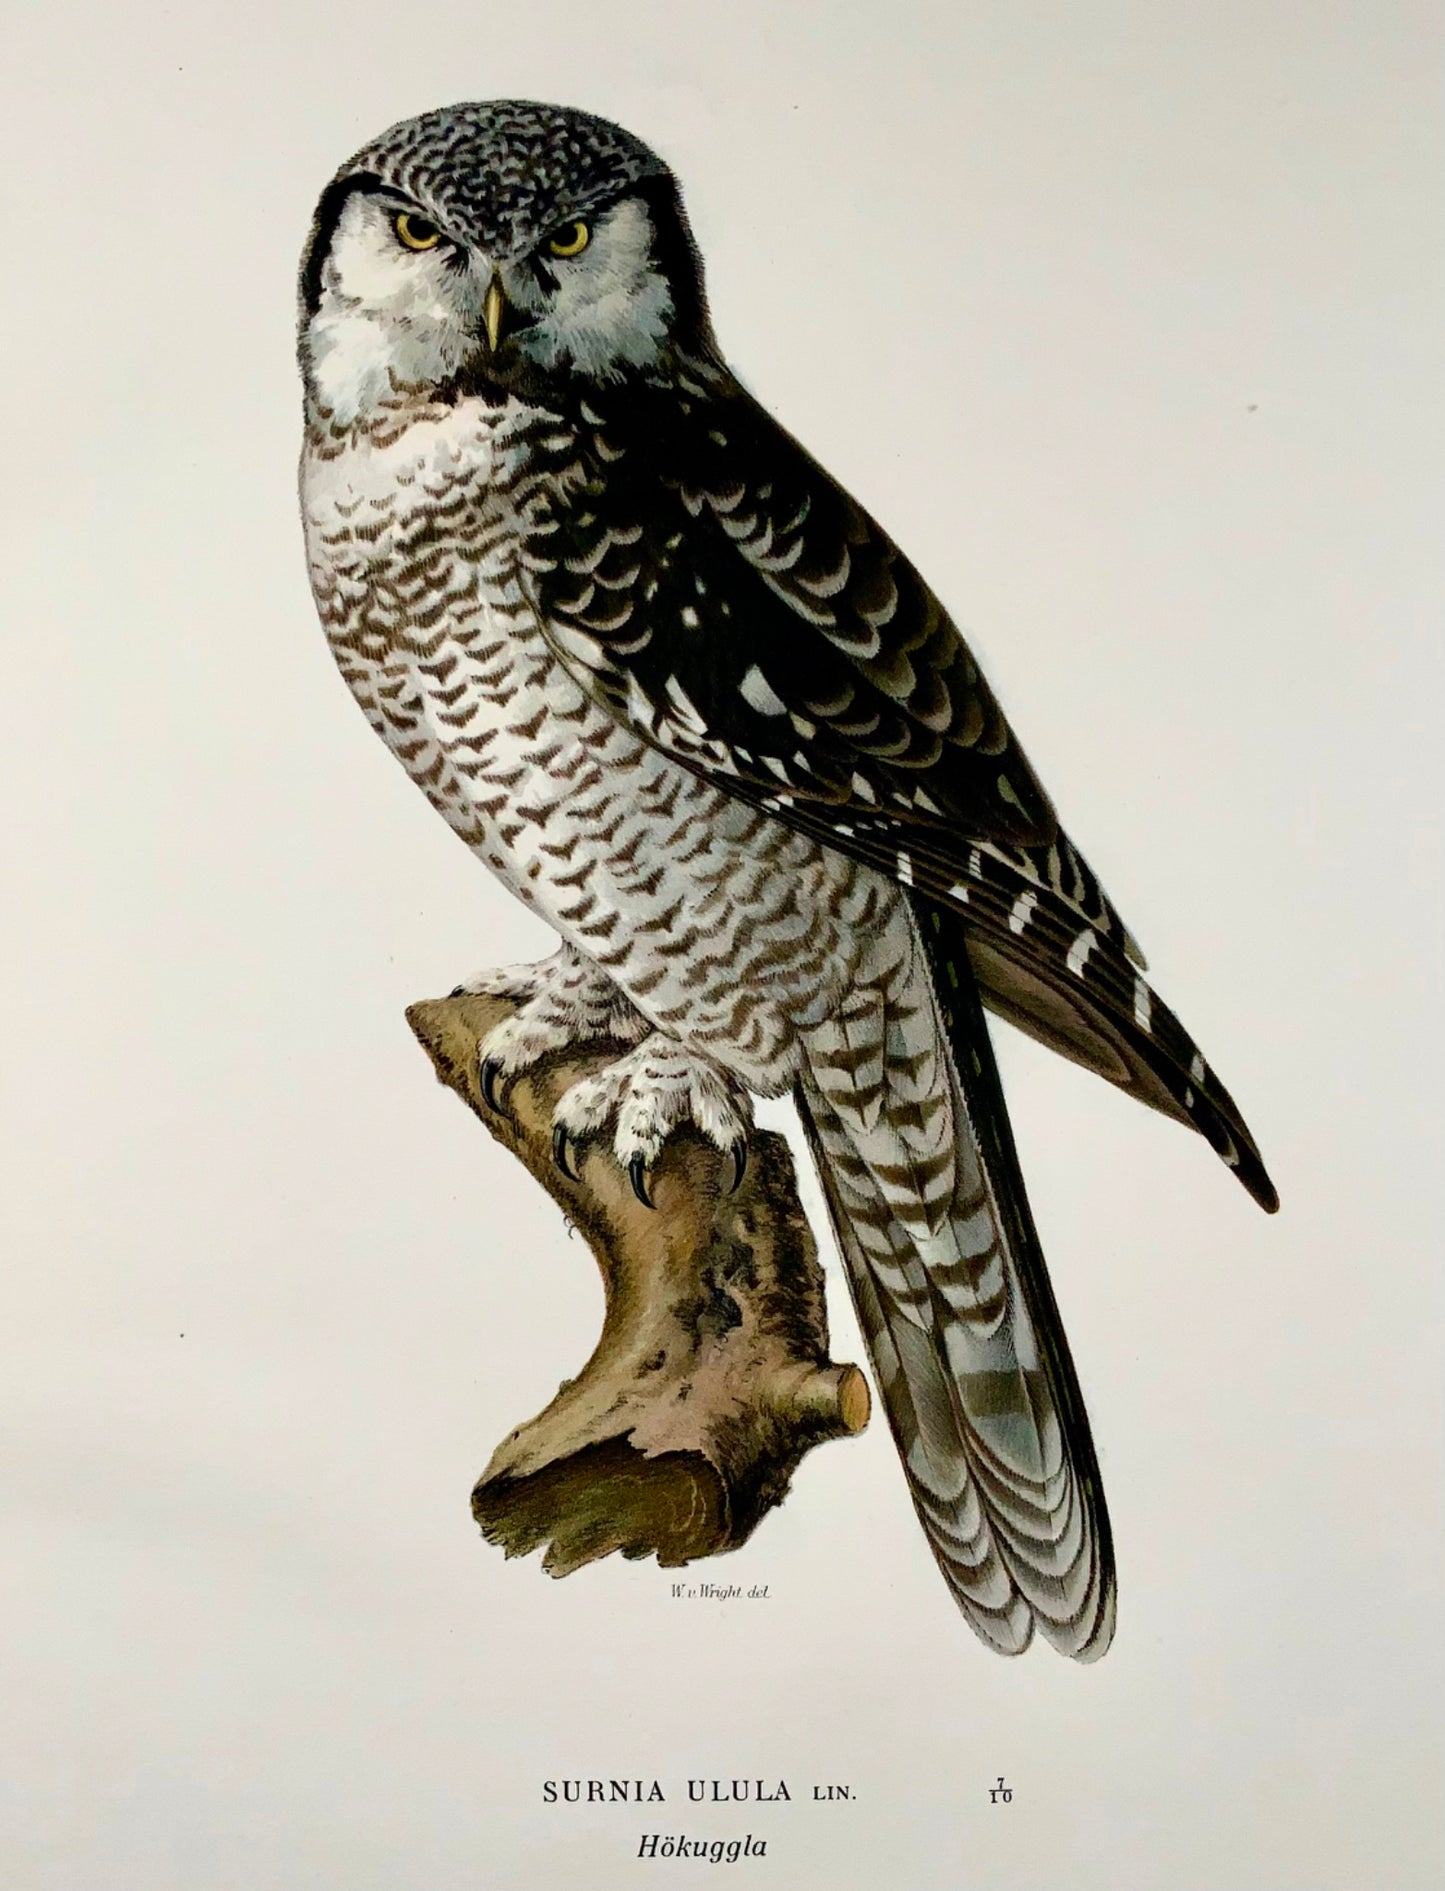 1918 Von Wright, Hawk-Owl, grande litografia in folio, ornitologia